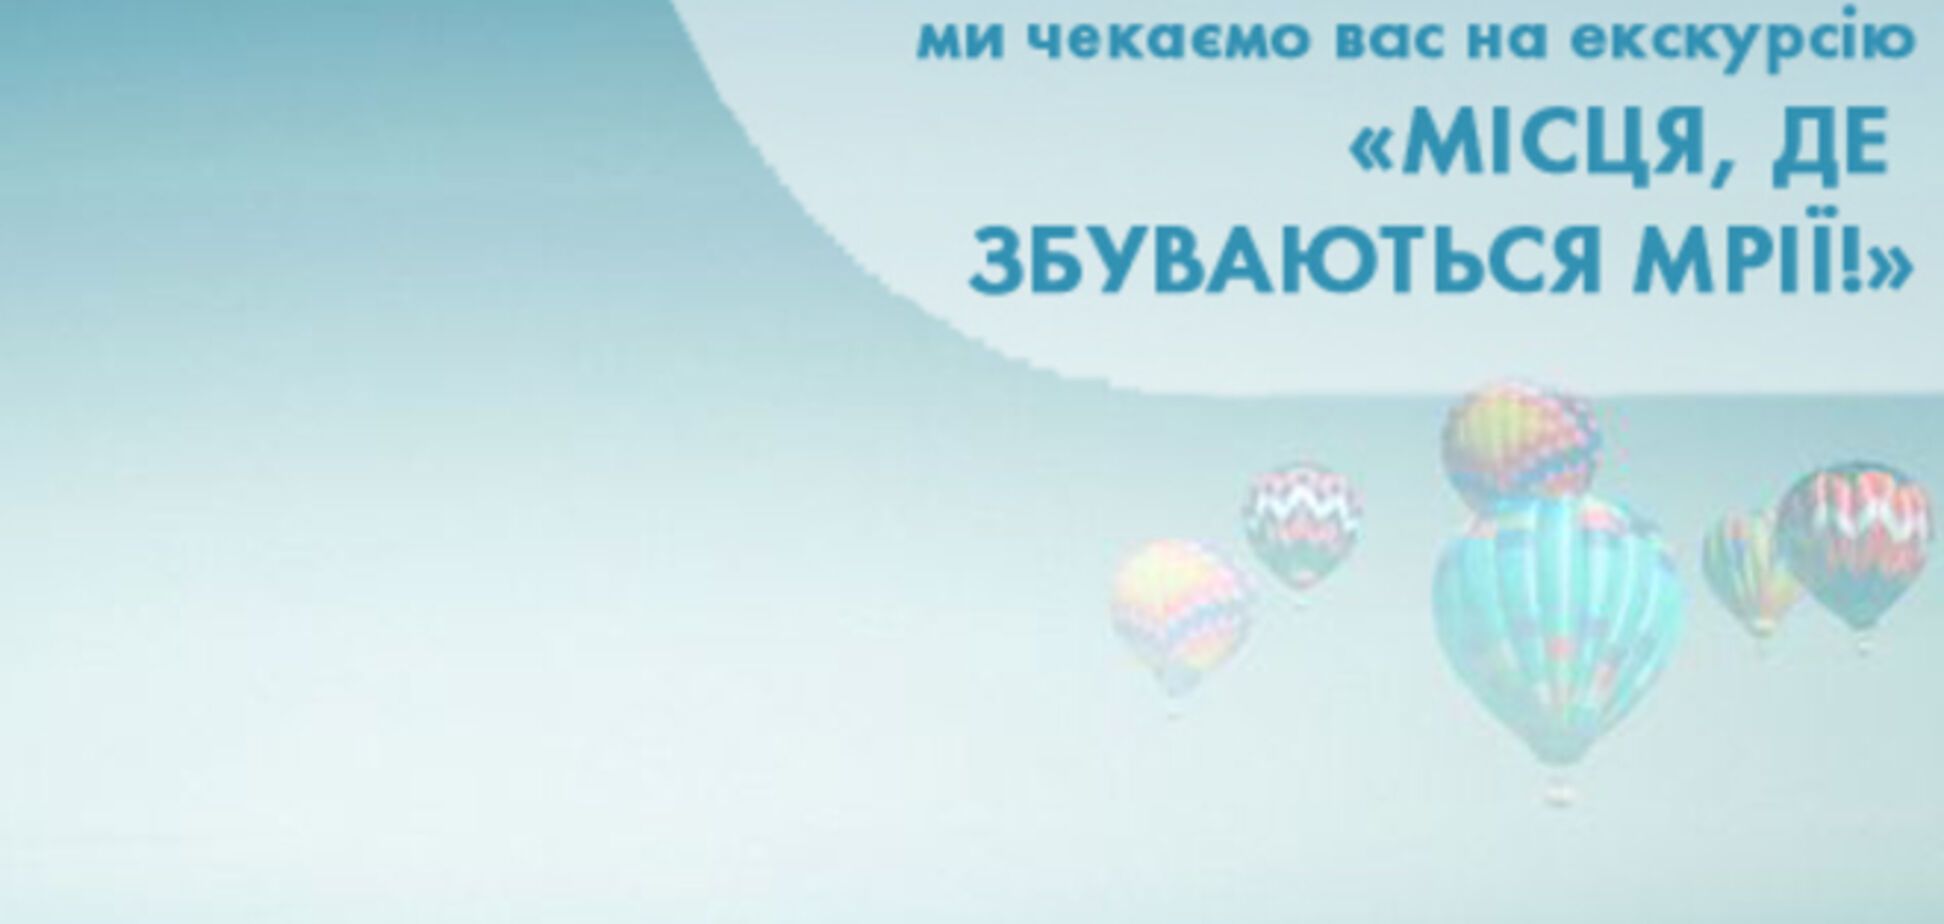 13 вересня в 9 містах України проведуть безкоштовні екскурсії